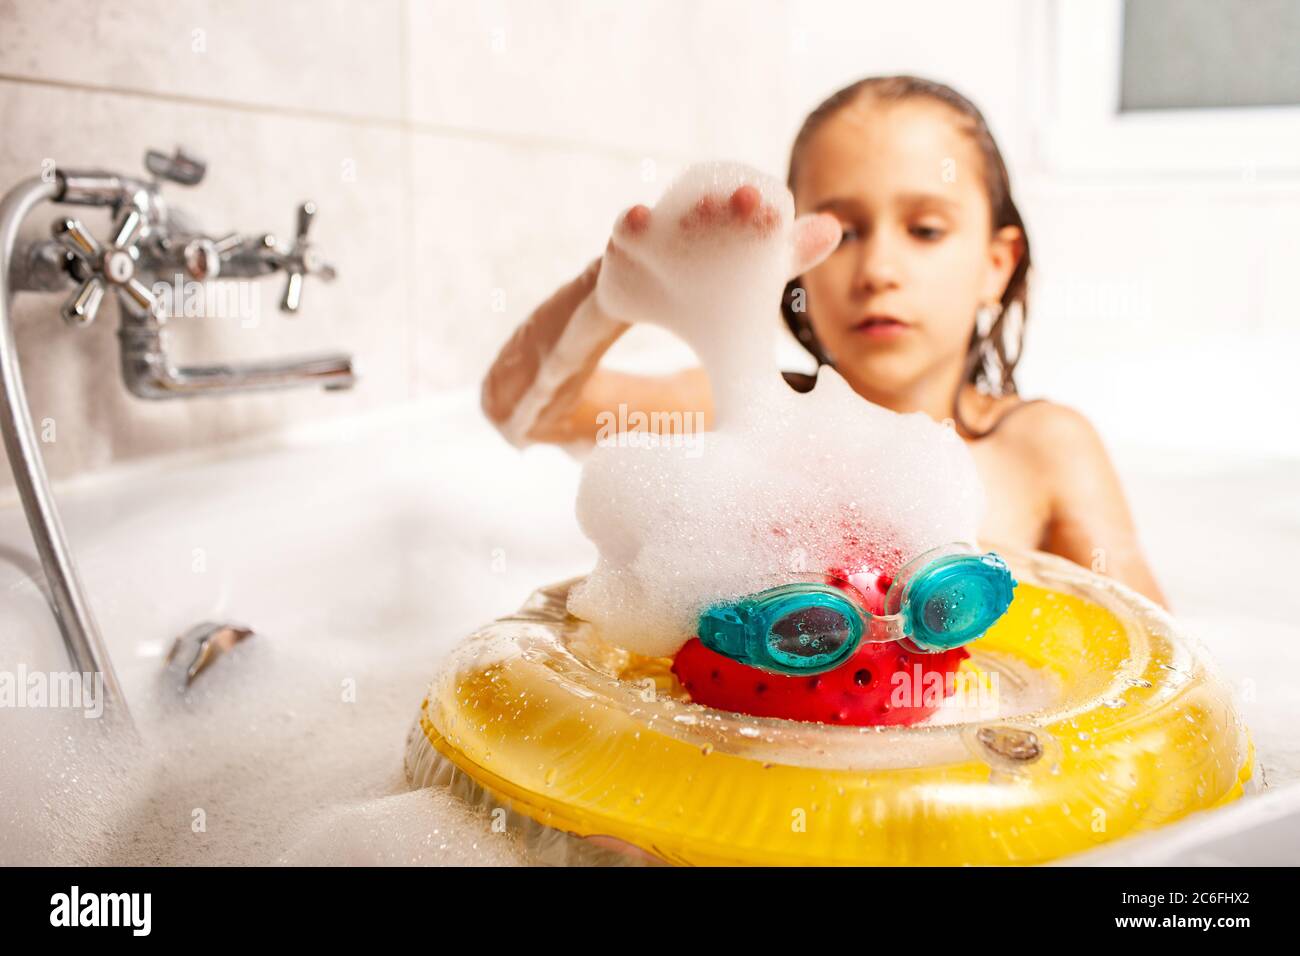 Девочка маленькая купается в ванной. Девочка с игрушками моется в ванной. Девочка моется в ванной с игрушками с игрушками. Девочка играется в ванной.